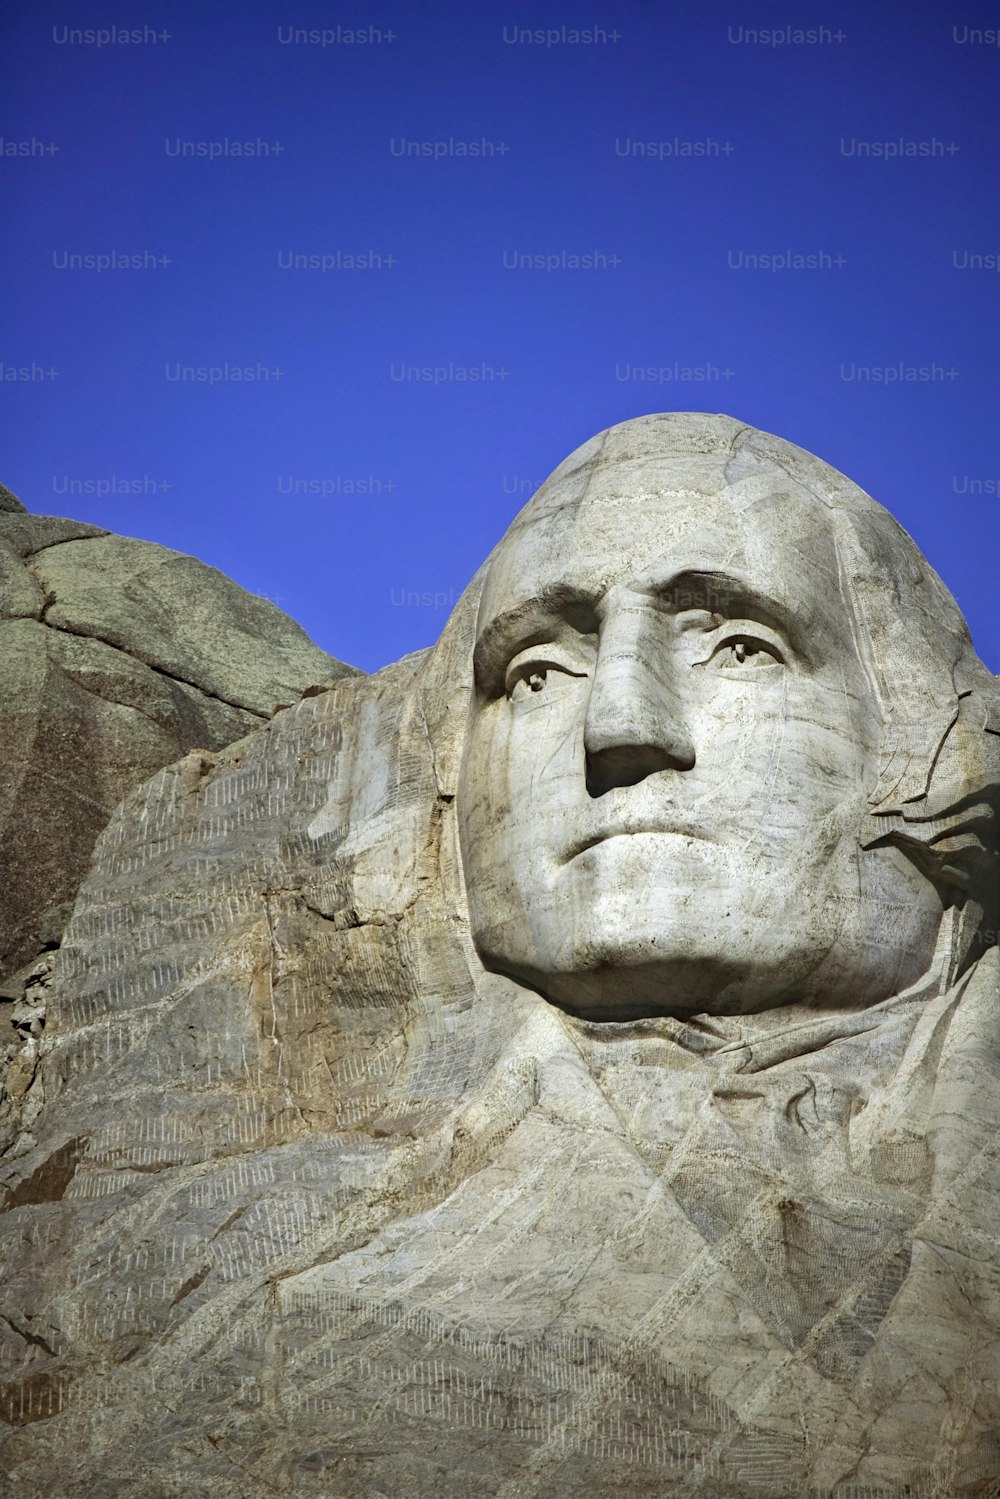 O rosto de Abraham Lincoln esculpido no lado de uma montanha